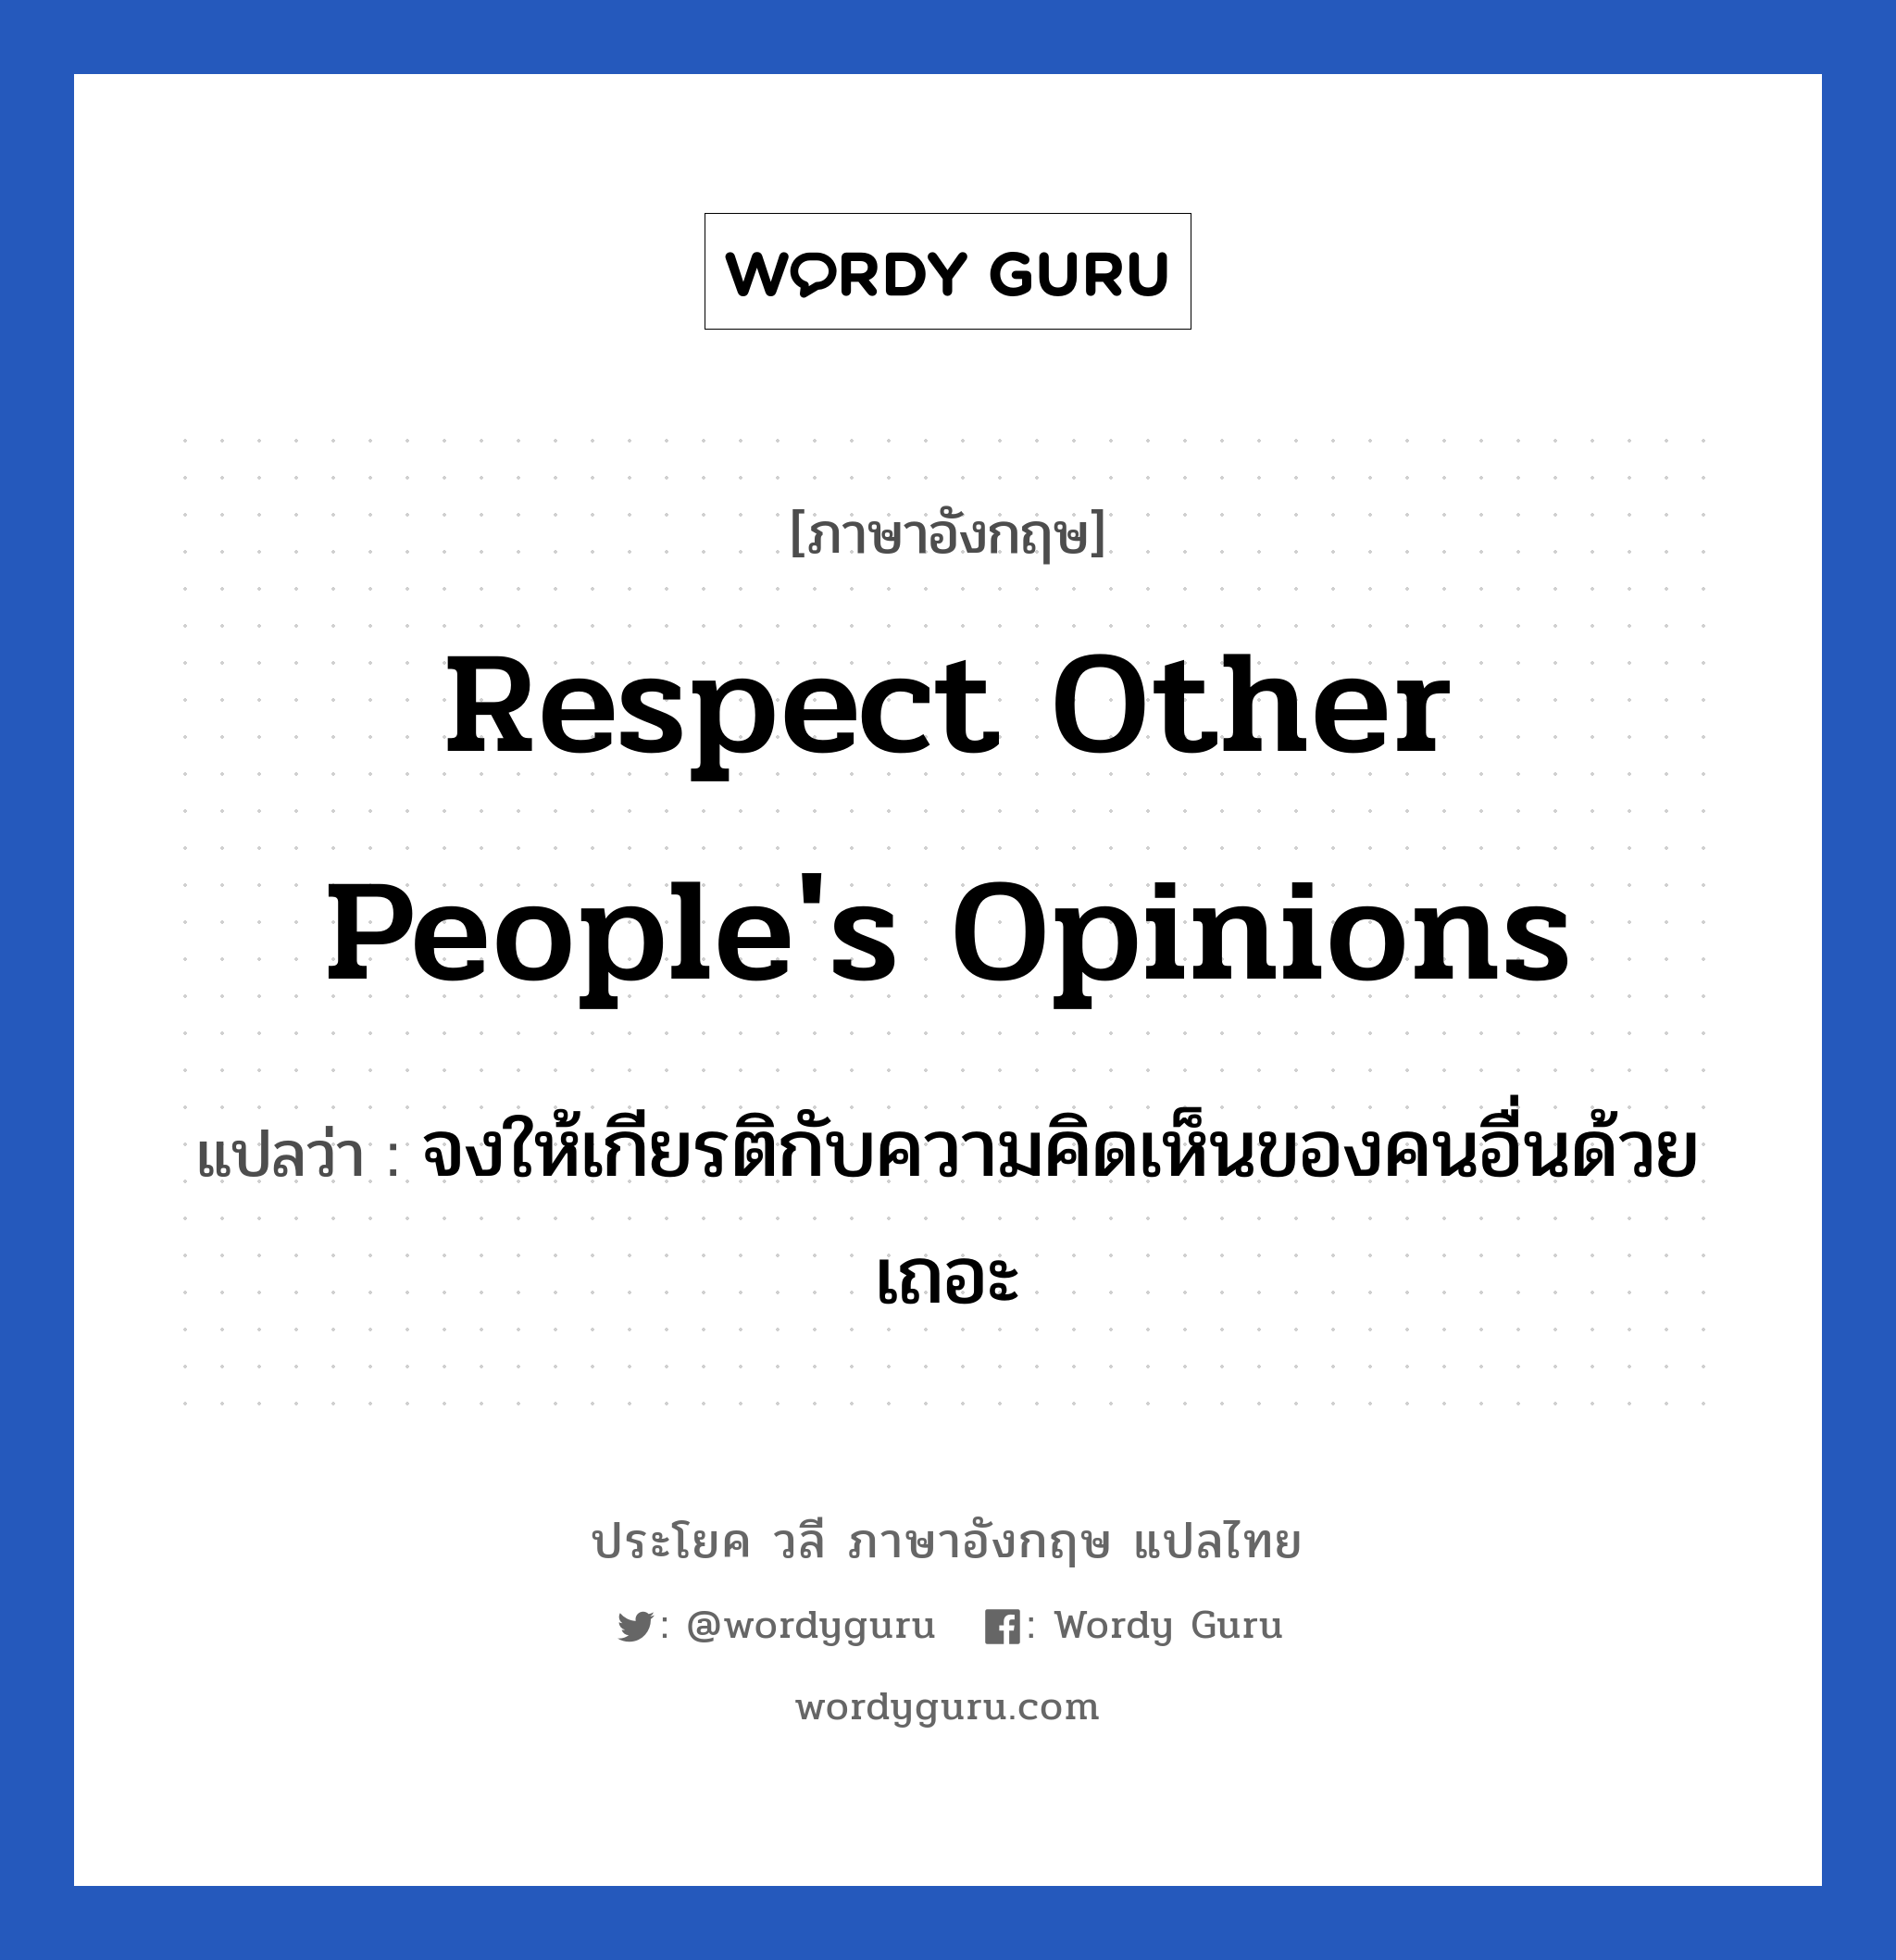 จงให้เกียรติกับความคิดเห็นของคนอื่นด้วยเถอะ ภาษาอังกฤษ?, วลีภาษาอังกฤษ จงให้เกียรติกับความคิดเห็นของคนอื่นด้วยเถอะ แปลว่า Respect other people's opinions